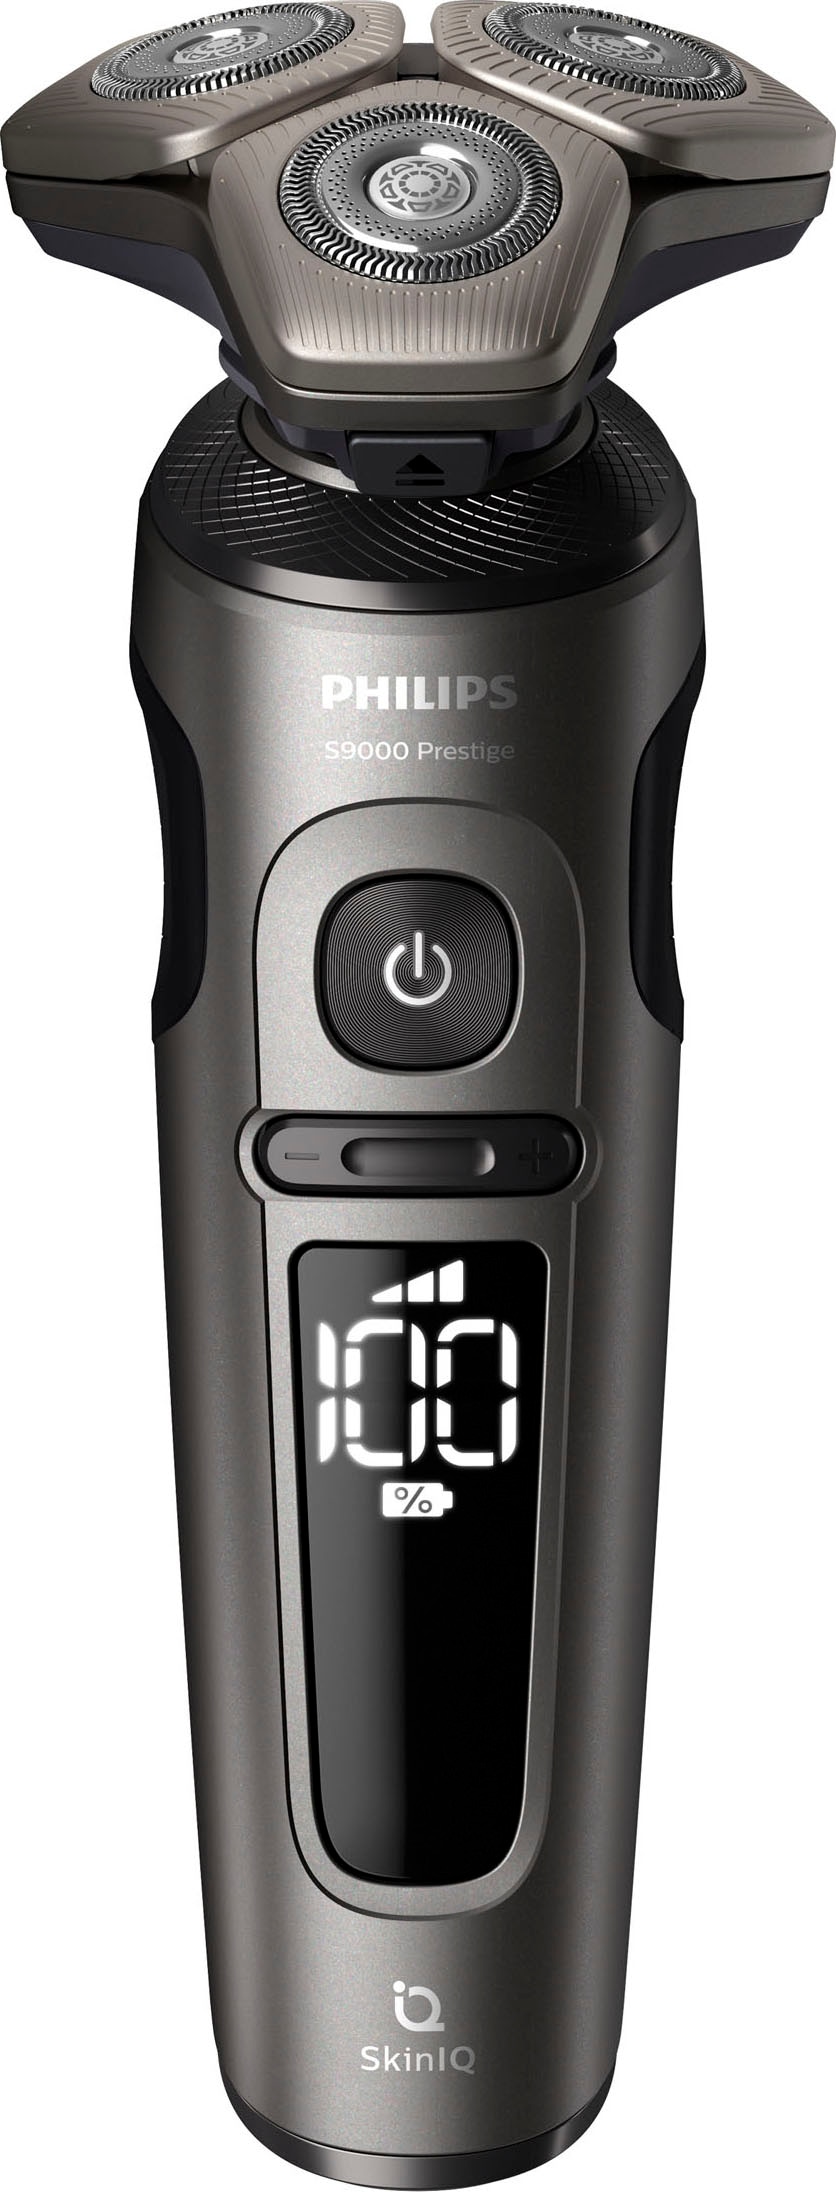 Philips Elektrorasierer »Series 9000 Prestige SP9872/15«, 2 St. Aufsätze, Etui, mit SkinIQ Technologie